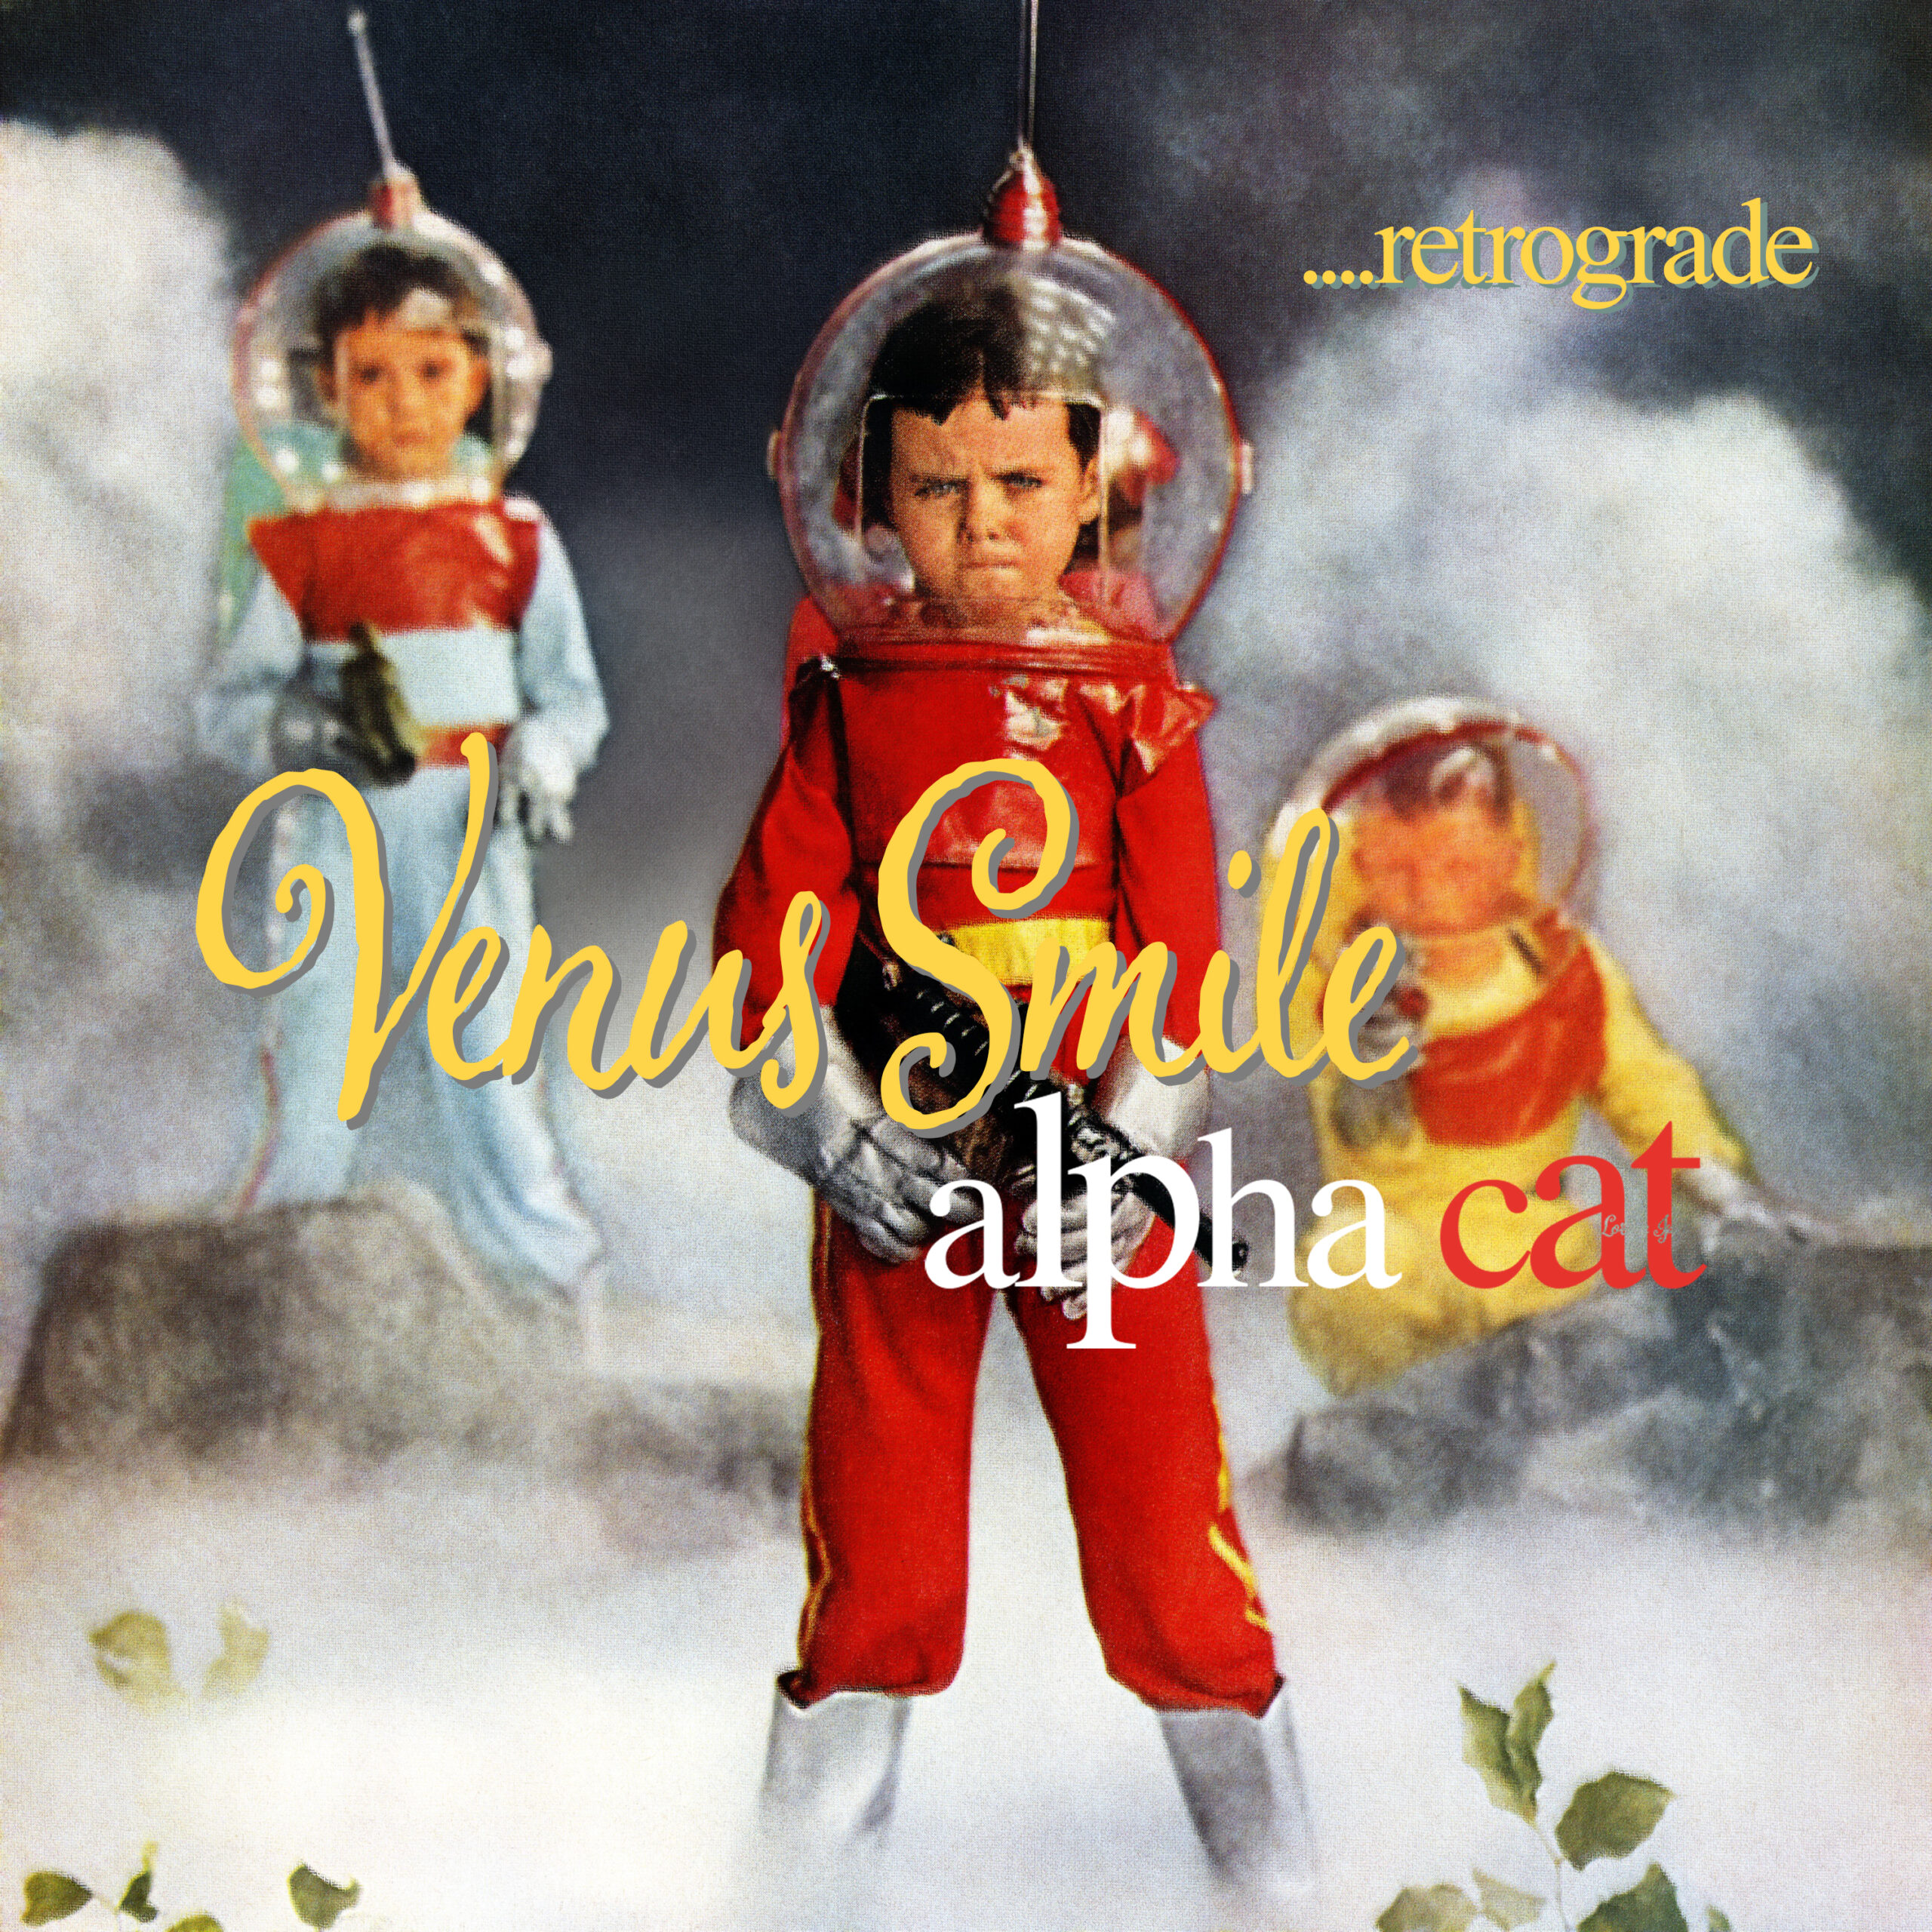 Venus Smile... Retrograde album cover by Alpha Cat